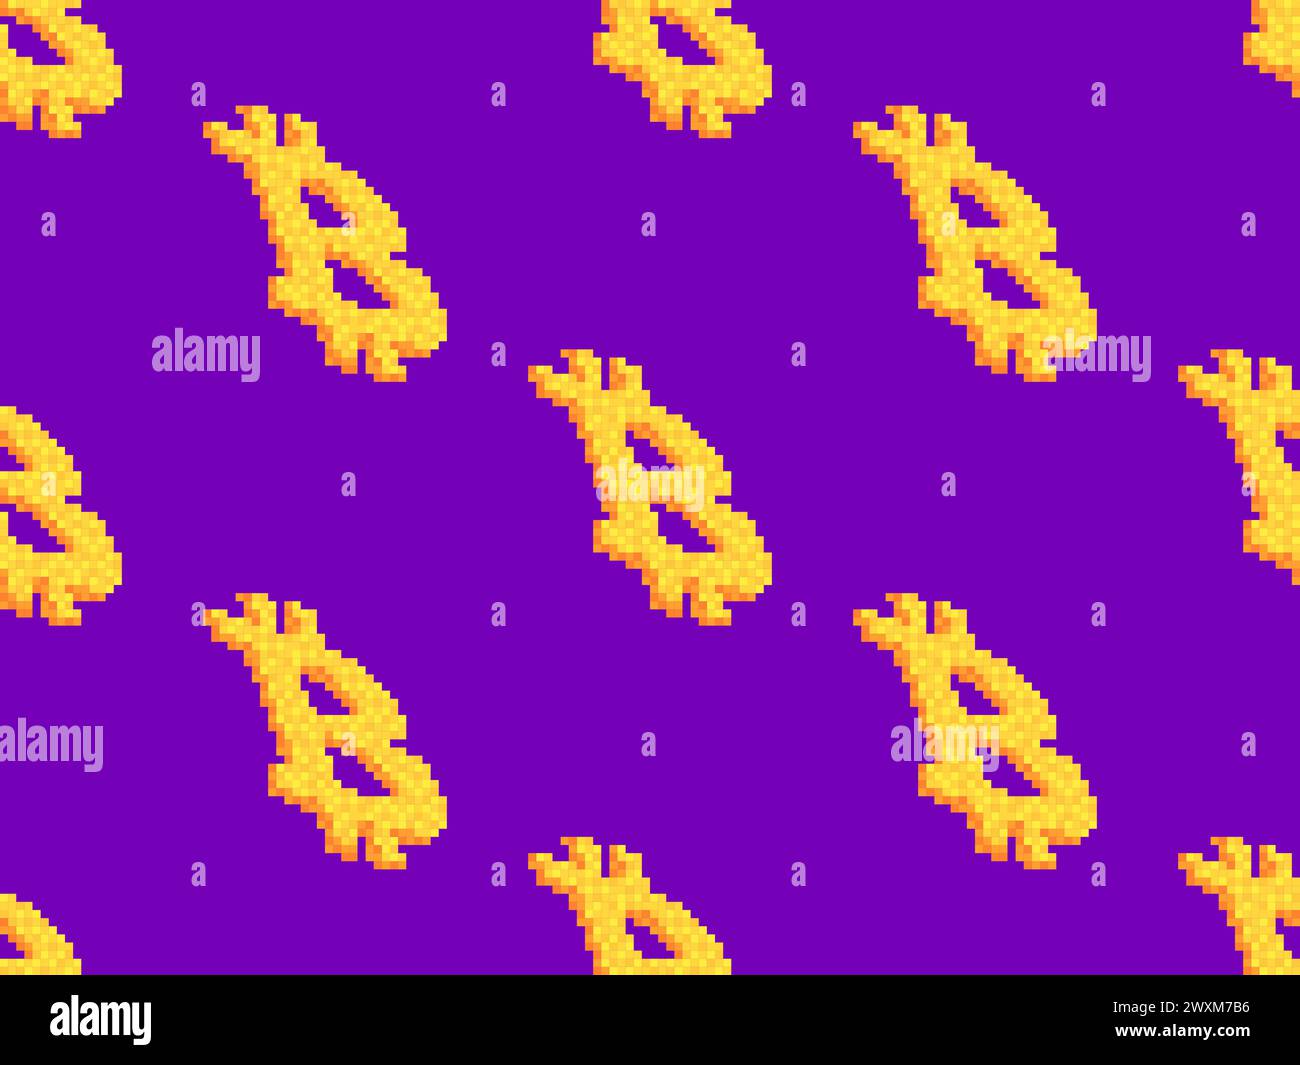 Simbolo Bitcoin in stile pixel. Pattern senza interruzioni con il simbolo Bitcoin nello stile della grafica a 8 bit. Criptovaluta Bitcoin. Progettazione di sfondi, Illustrazione Vettoriale